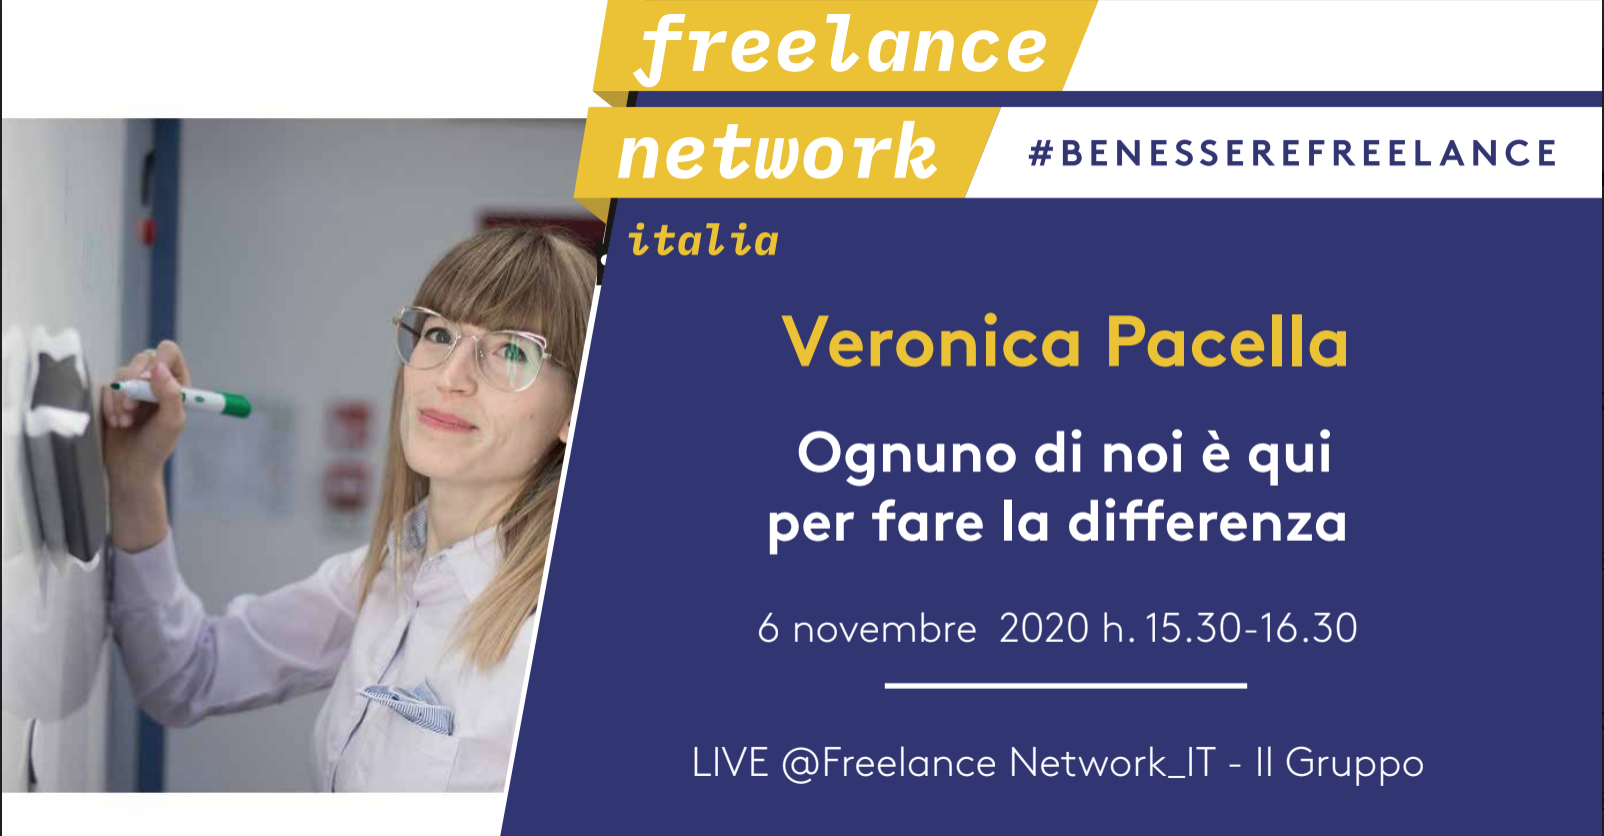 #benesserefreelance | 6 novembre con Veronica Pacella. Ognuno di noi può fare la differenza